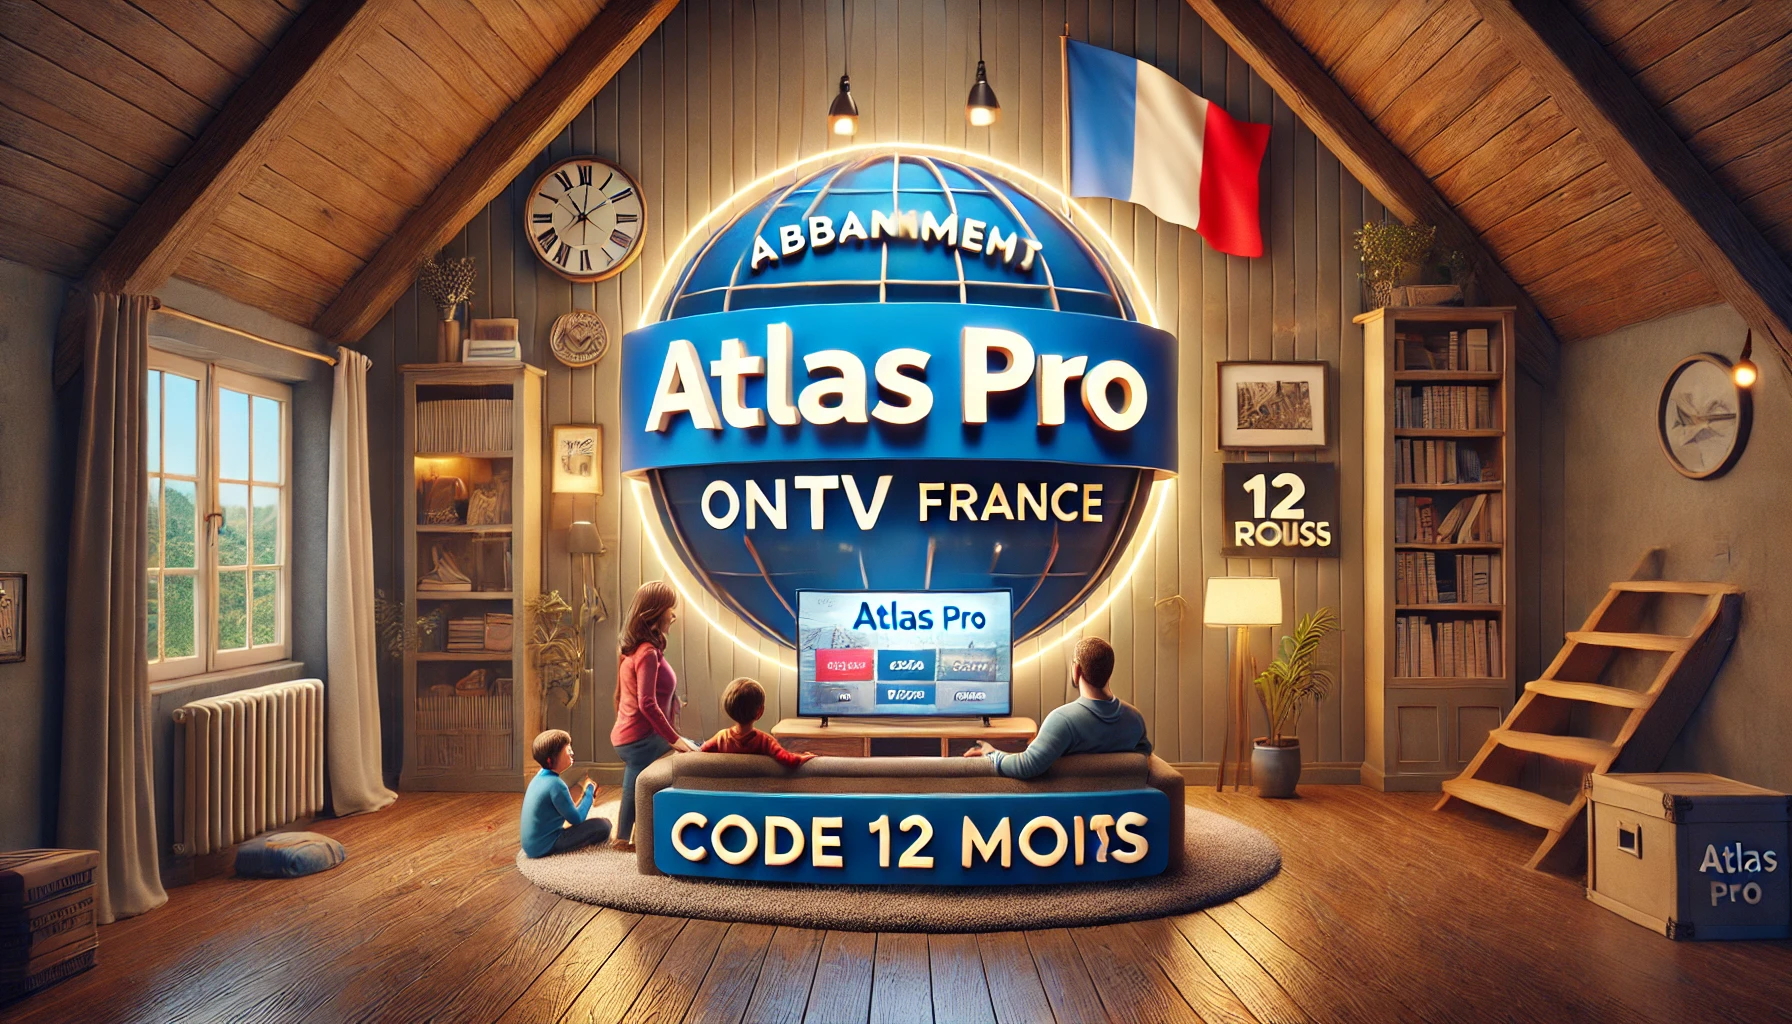 Atlas pro - ABONNEMENT ATLAS PRO ONTV FRANCE | CODE 12 MOIS